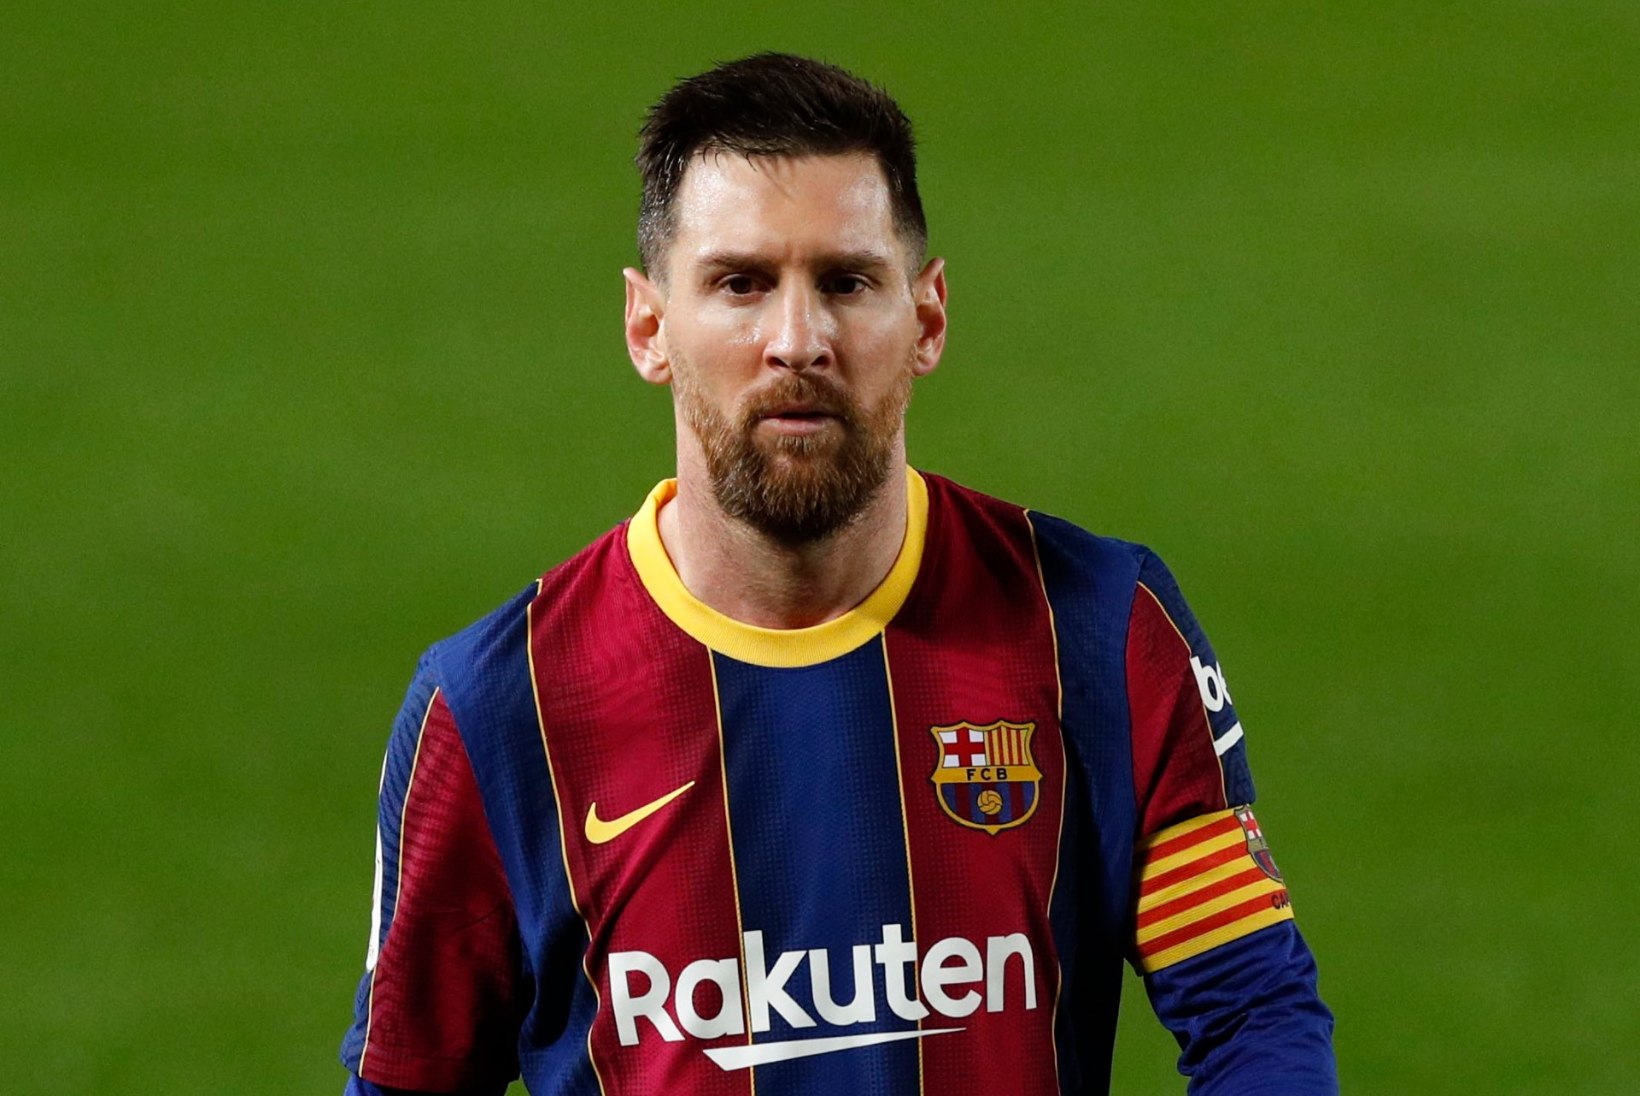 Selgusid maailma enimteenivad jalgpallurid, Messi on teistest mäekõrguselt üle